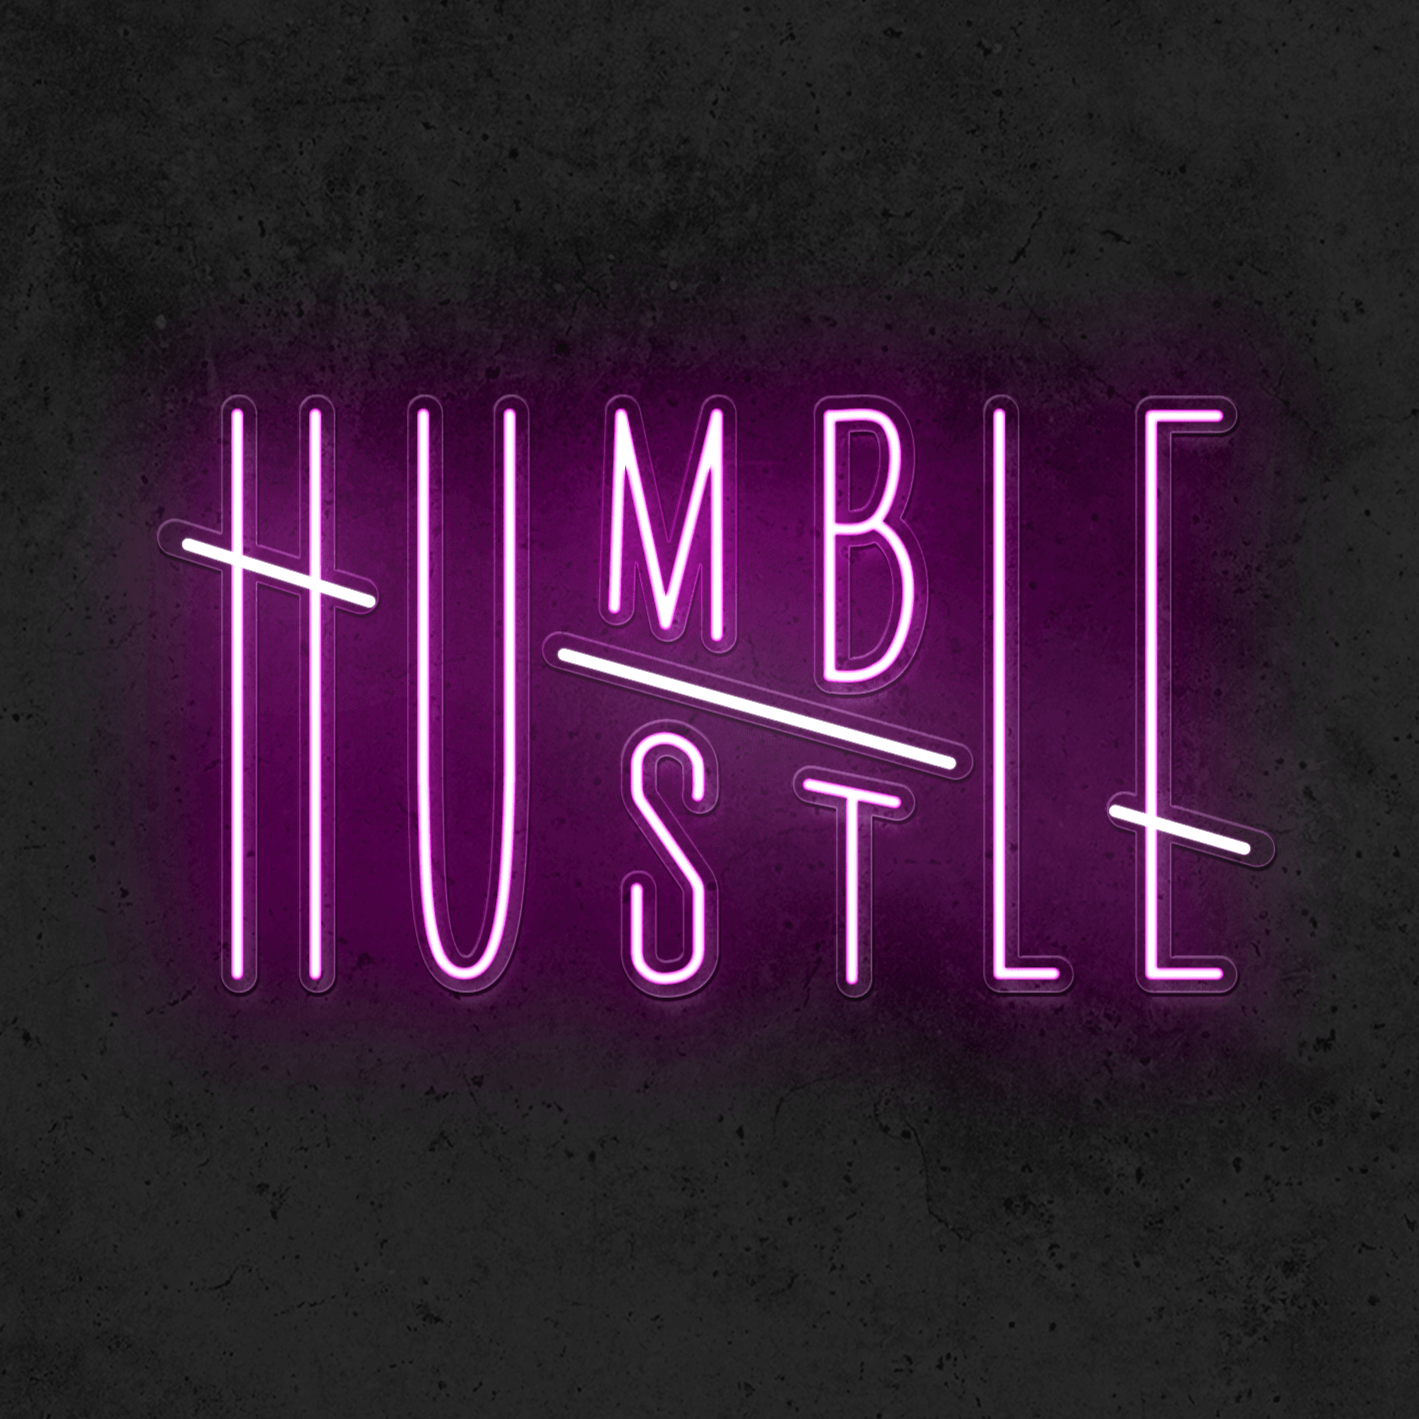 Hustle/ Humble - Good Vibes Neon